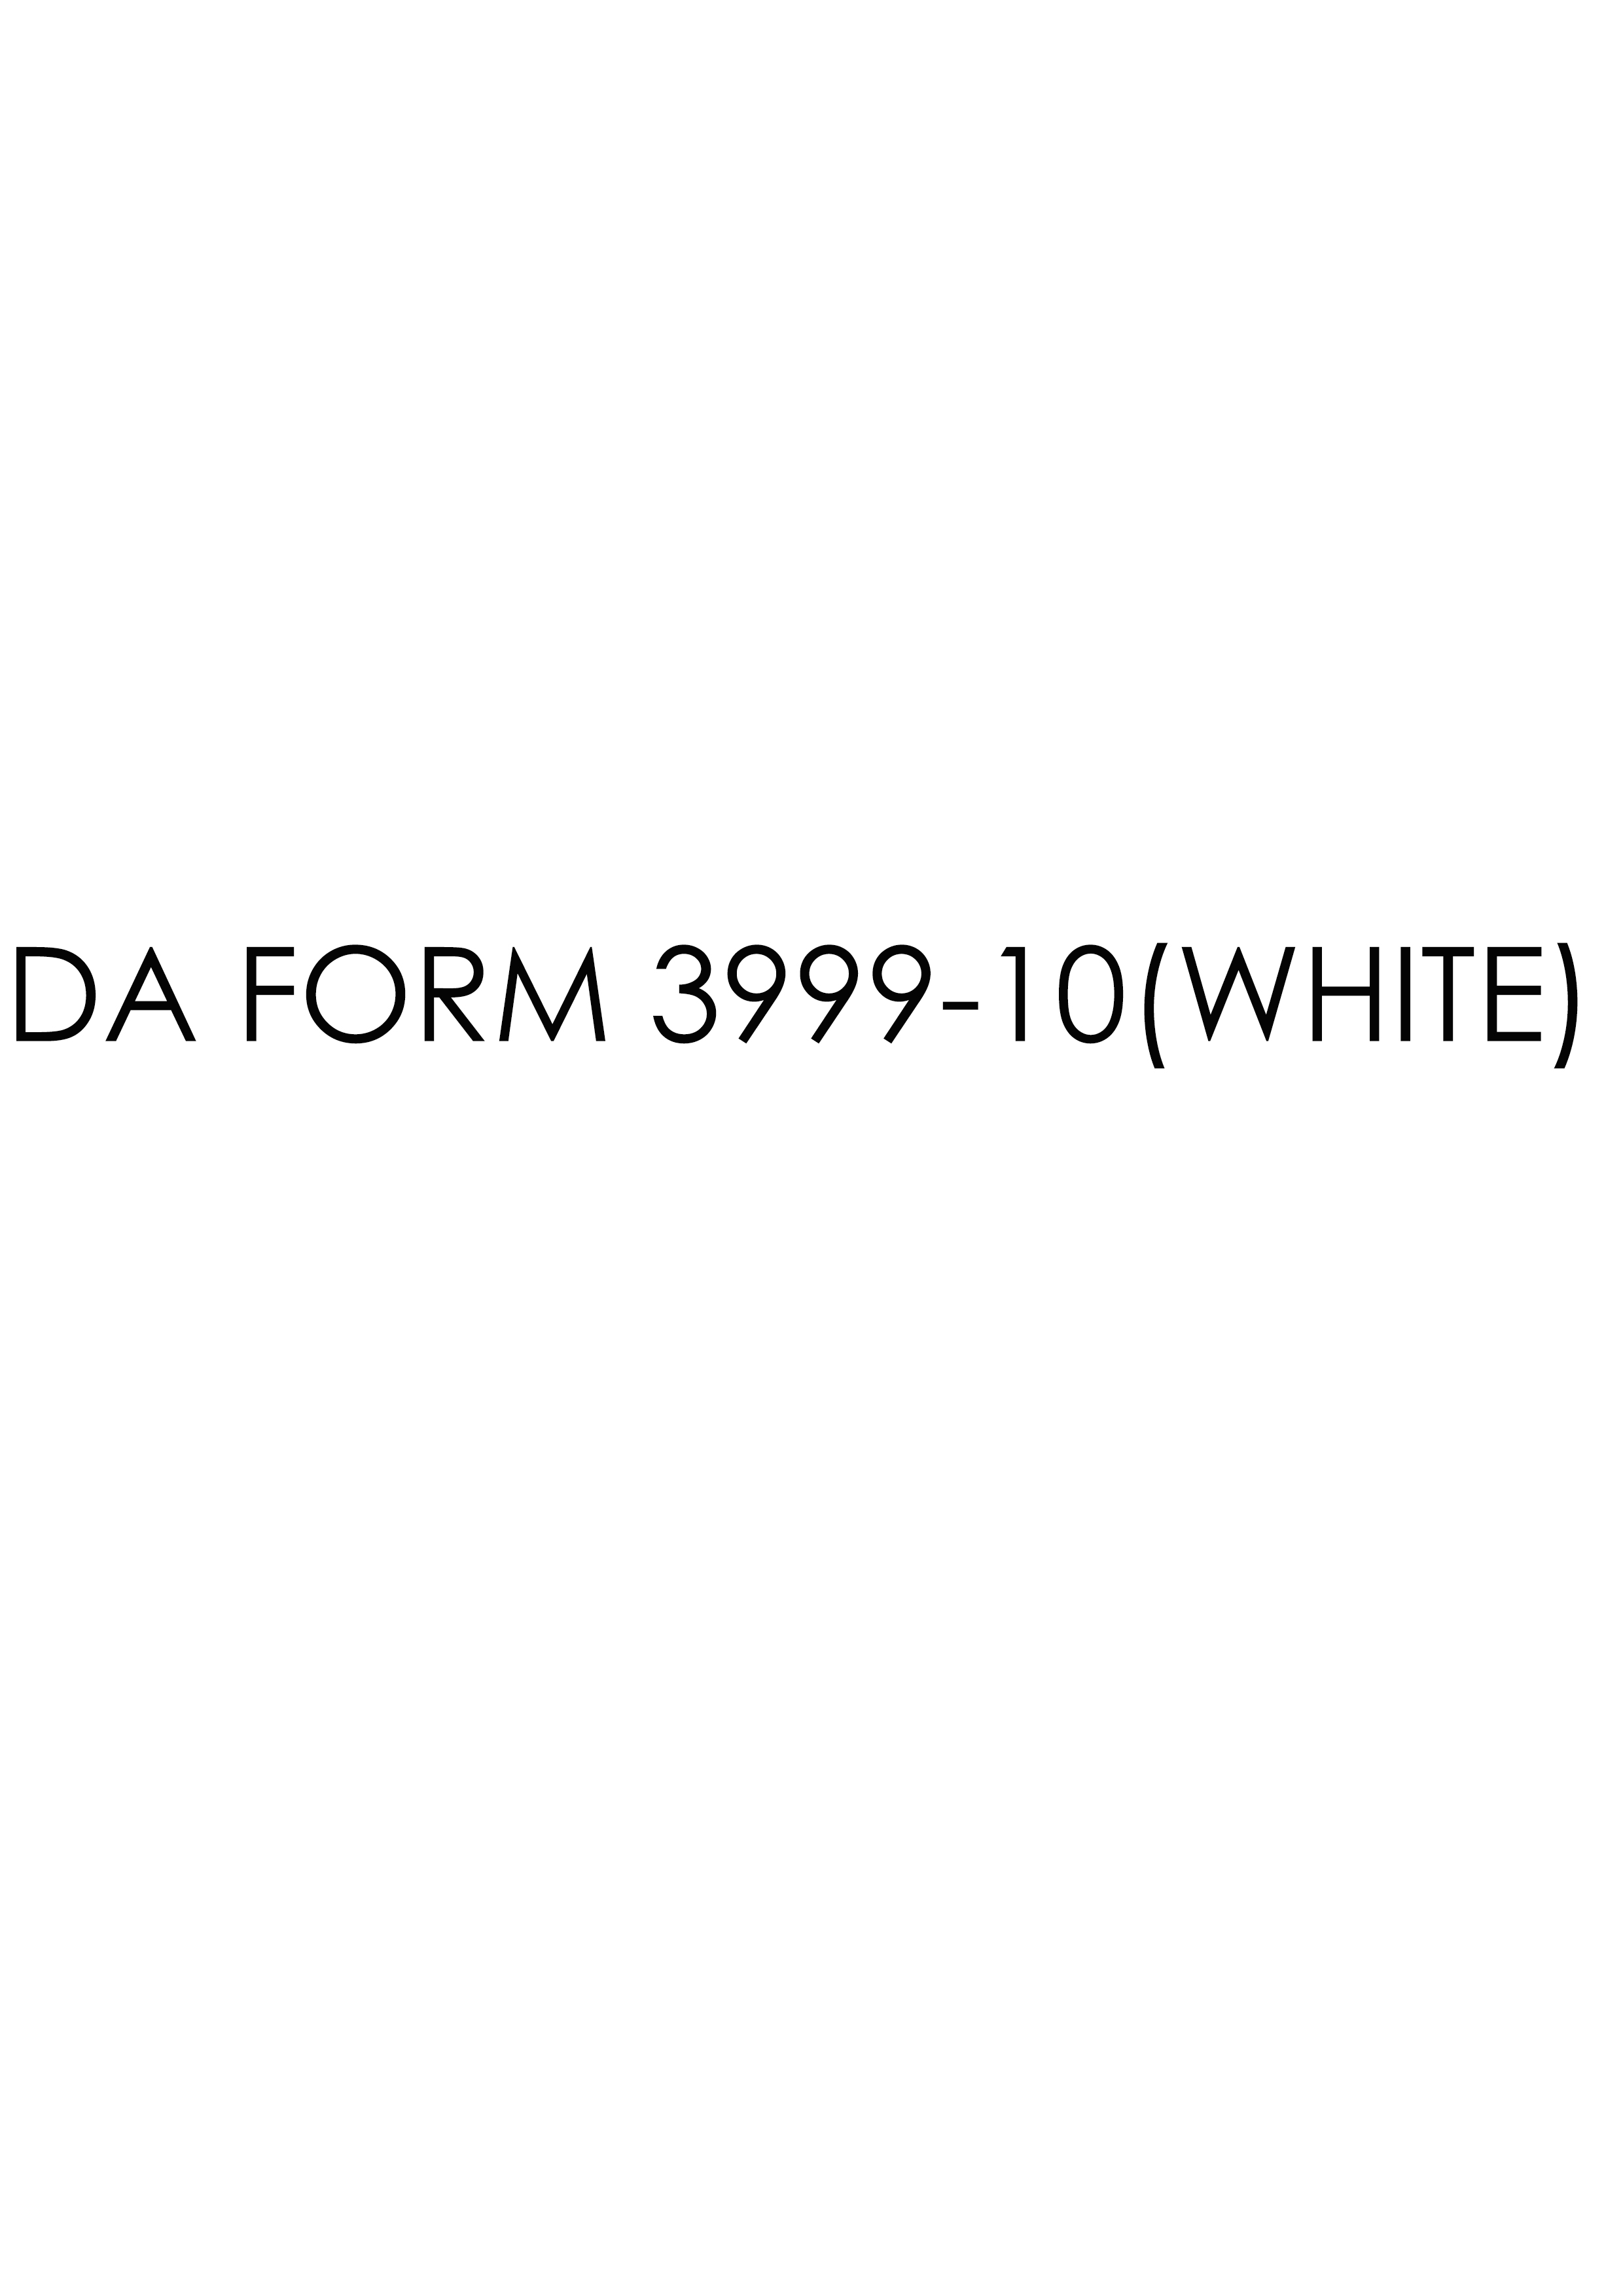 da Form 3999-10(WHITE) fillable